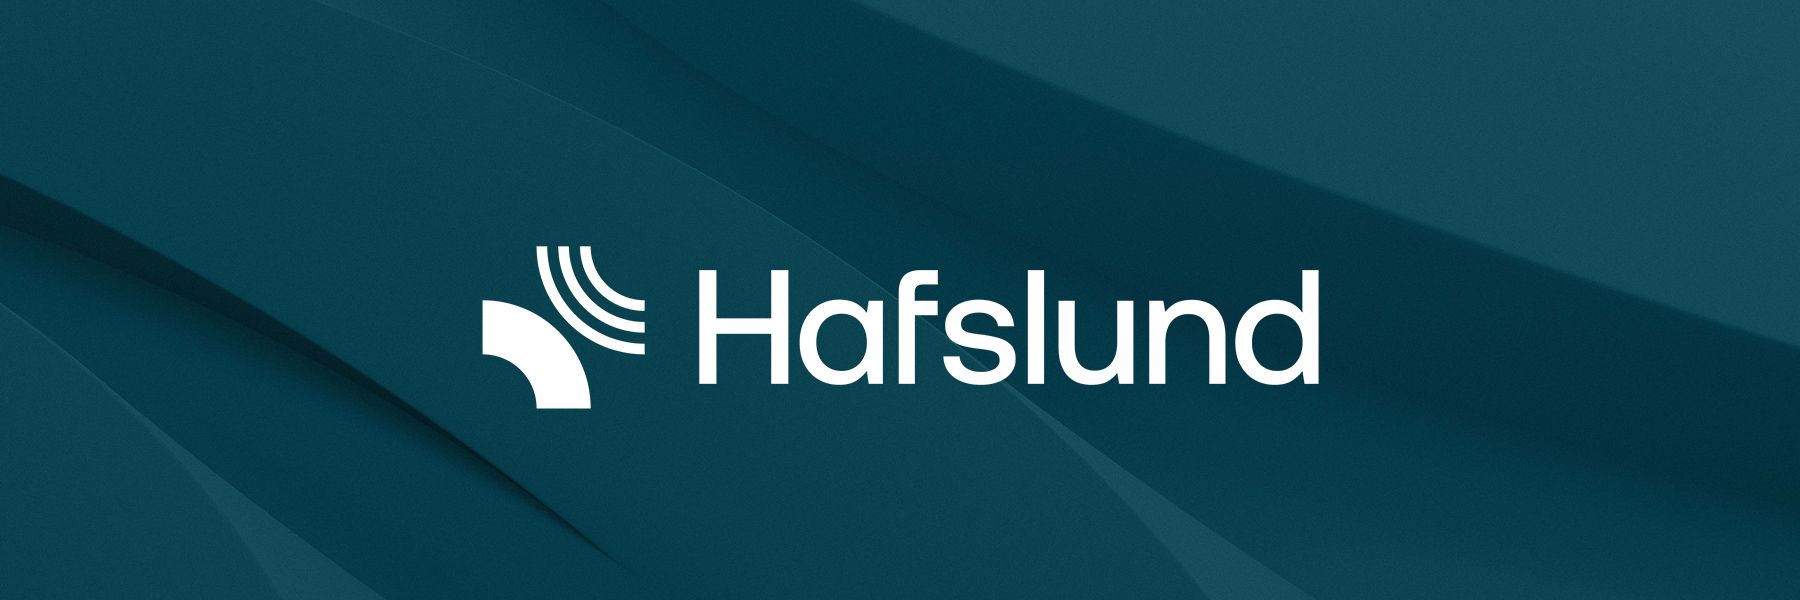 Hafslund – et selskap med over hundre års historie 🤔